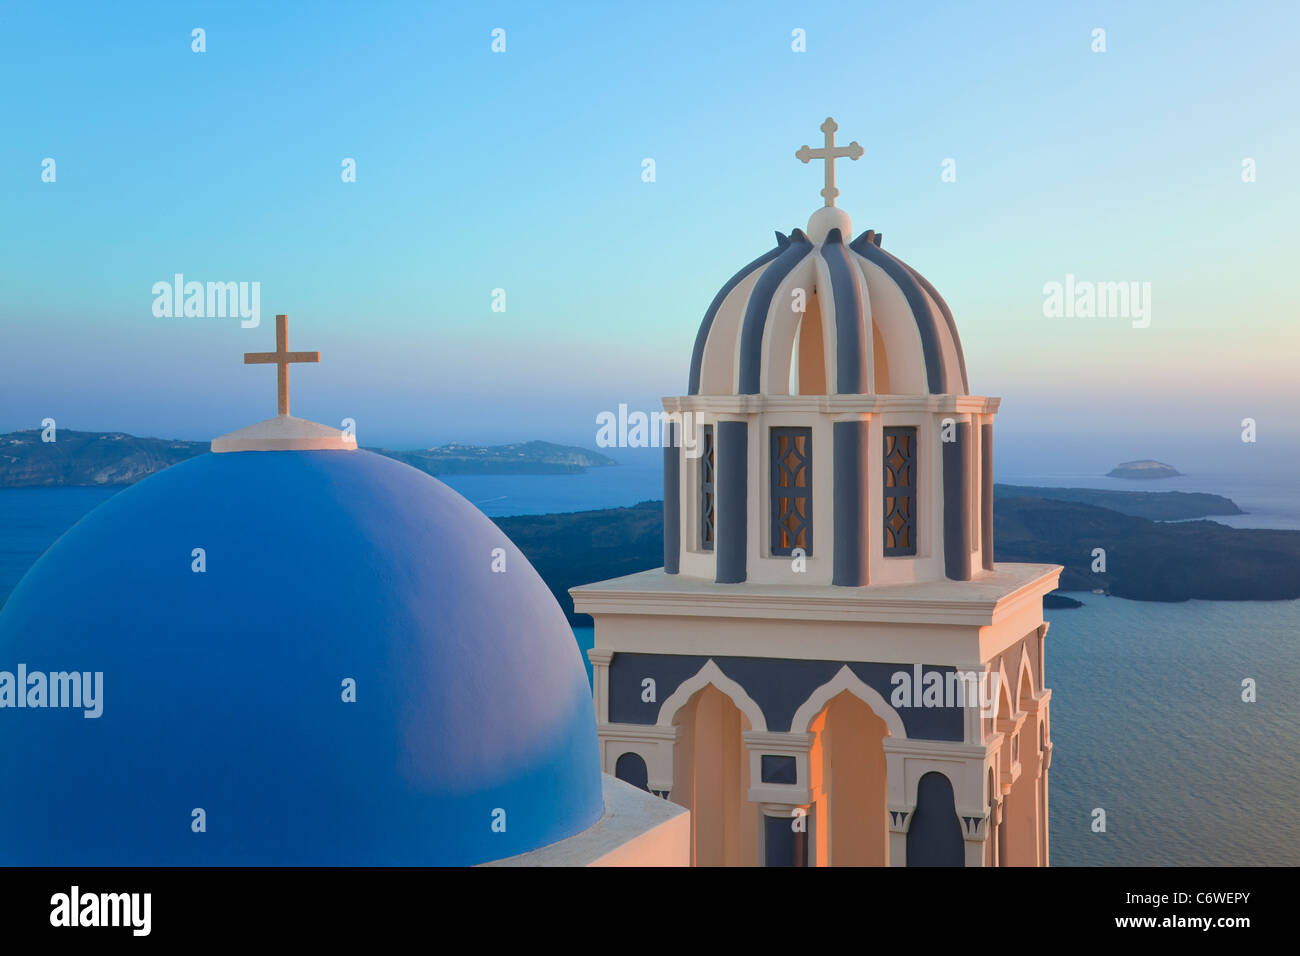 Les clochers de l'Église orthodoxe avec vue sur la caldeira de Fira, Santorin (thira), Cyclades, Mer Égée, Grèce, Europe Banque D'Images